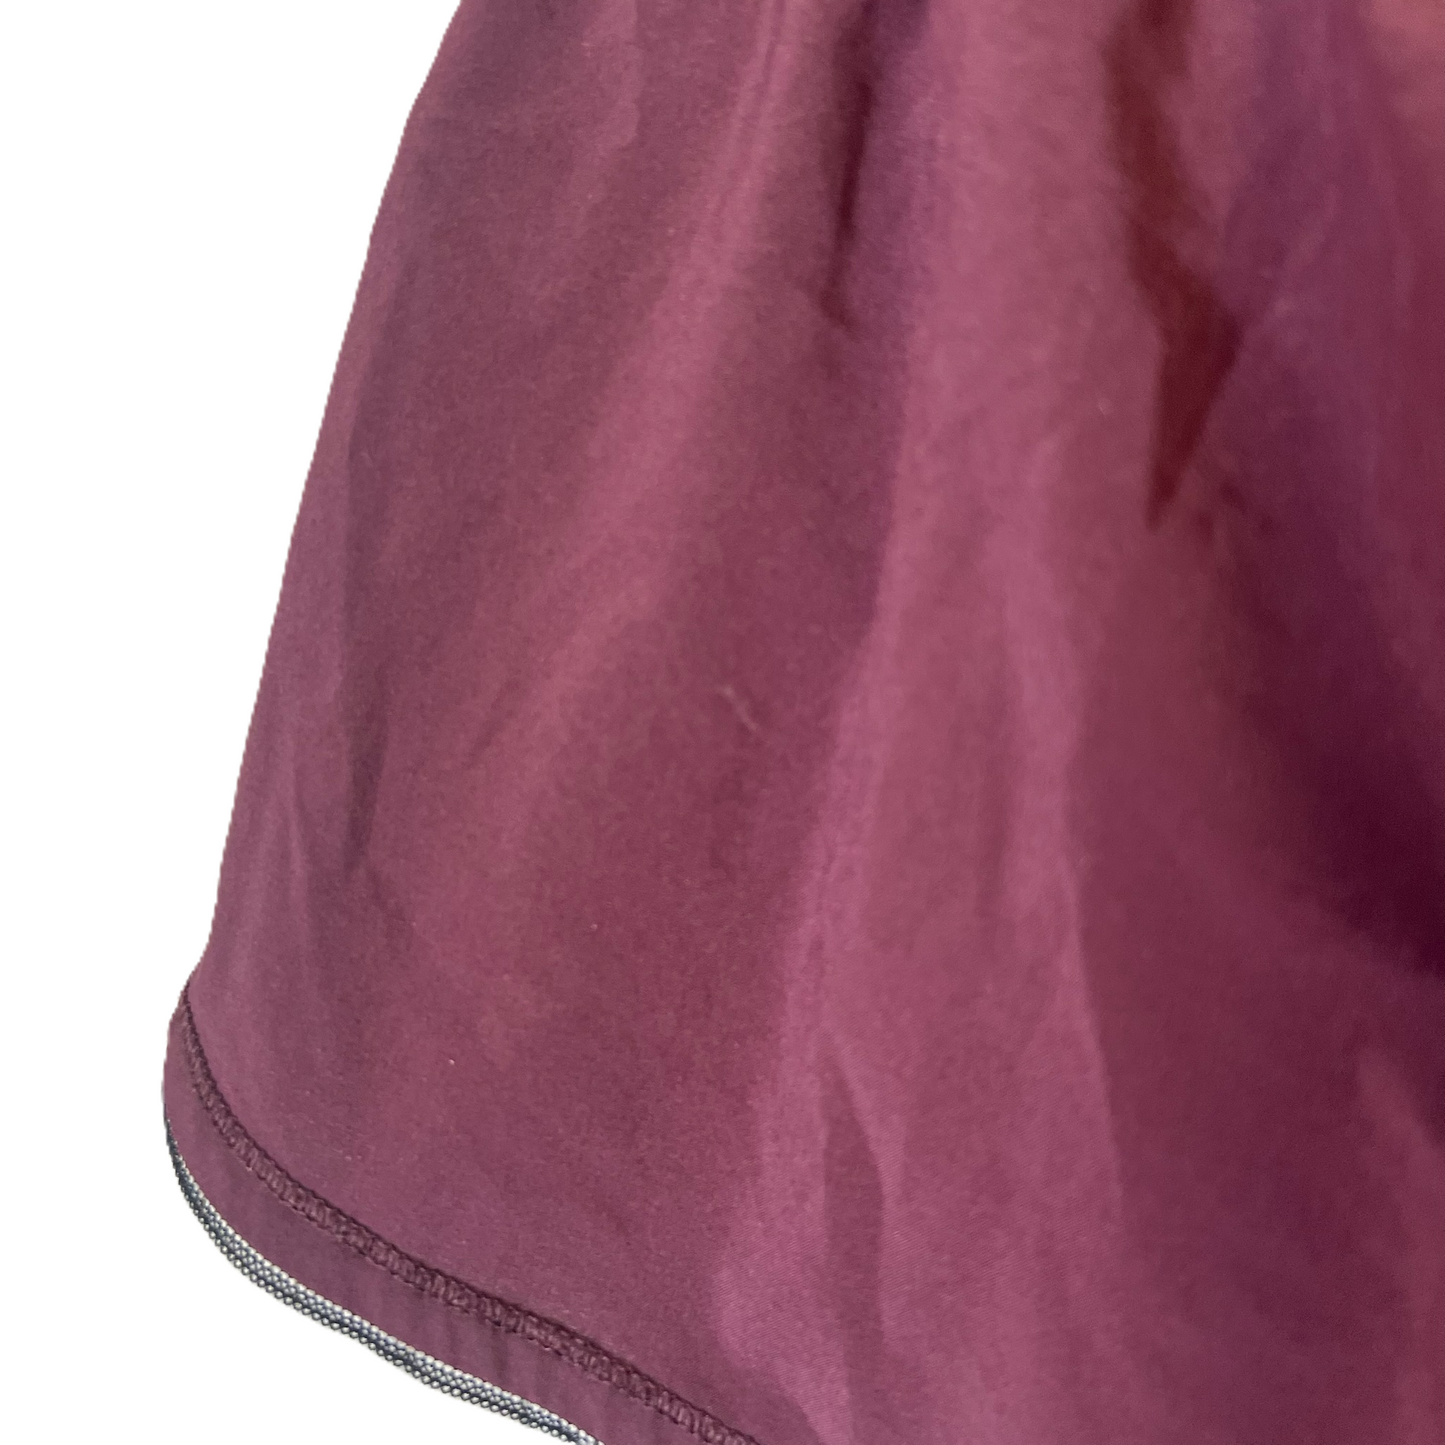 Purple Athletic Shorts By Lululemon, Size: 6